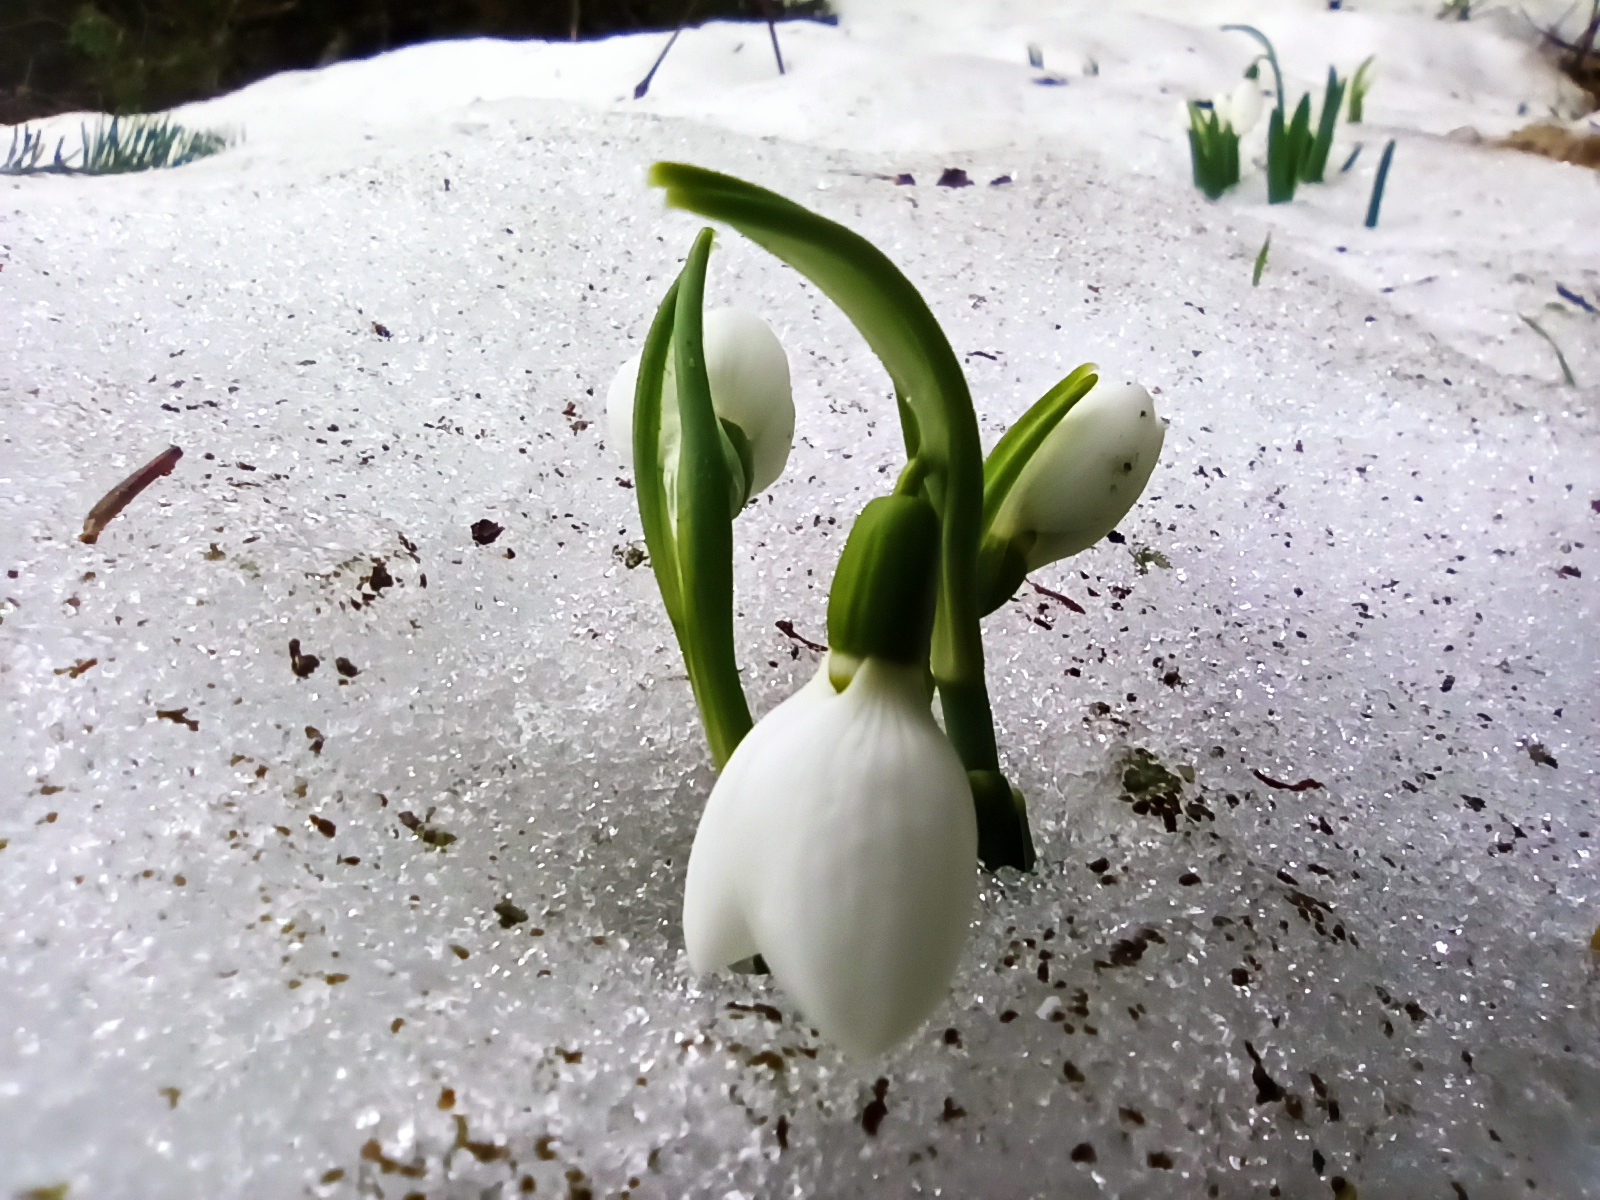 Toroslarda  Baharın Müjdecisi Kardelenler çiçek açtı  FOTOHABER